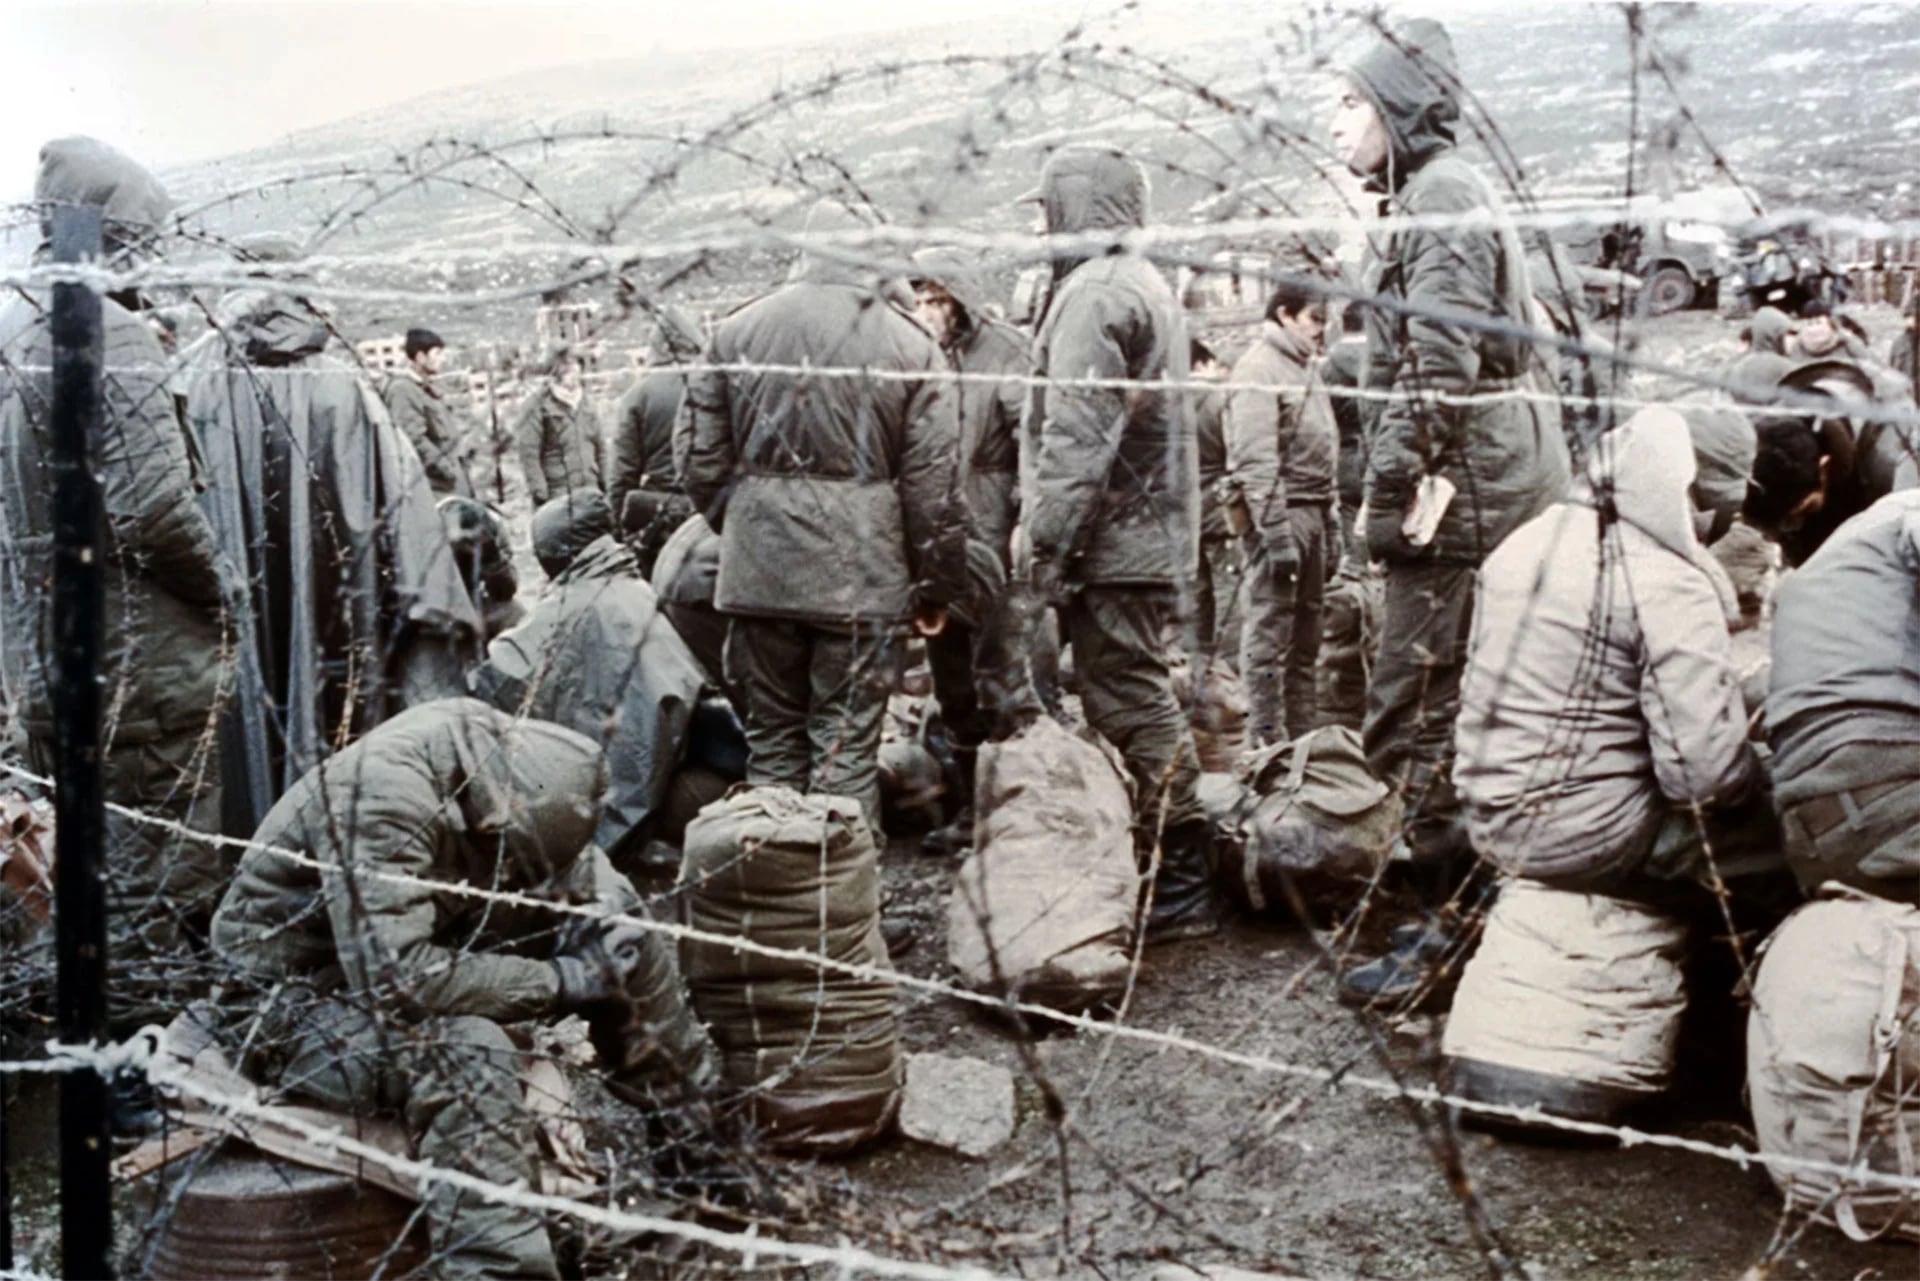 Prisioneros de guerra argentinos realizaron durante su detención trabajos peligrosos prohibidos por la Convención de Ginebra, como transportar municiones